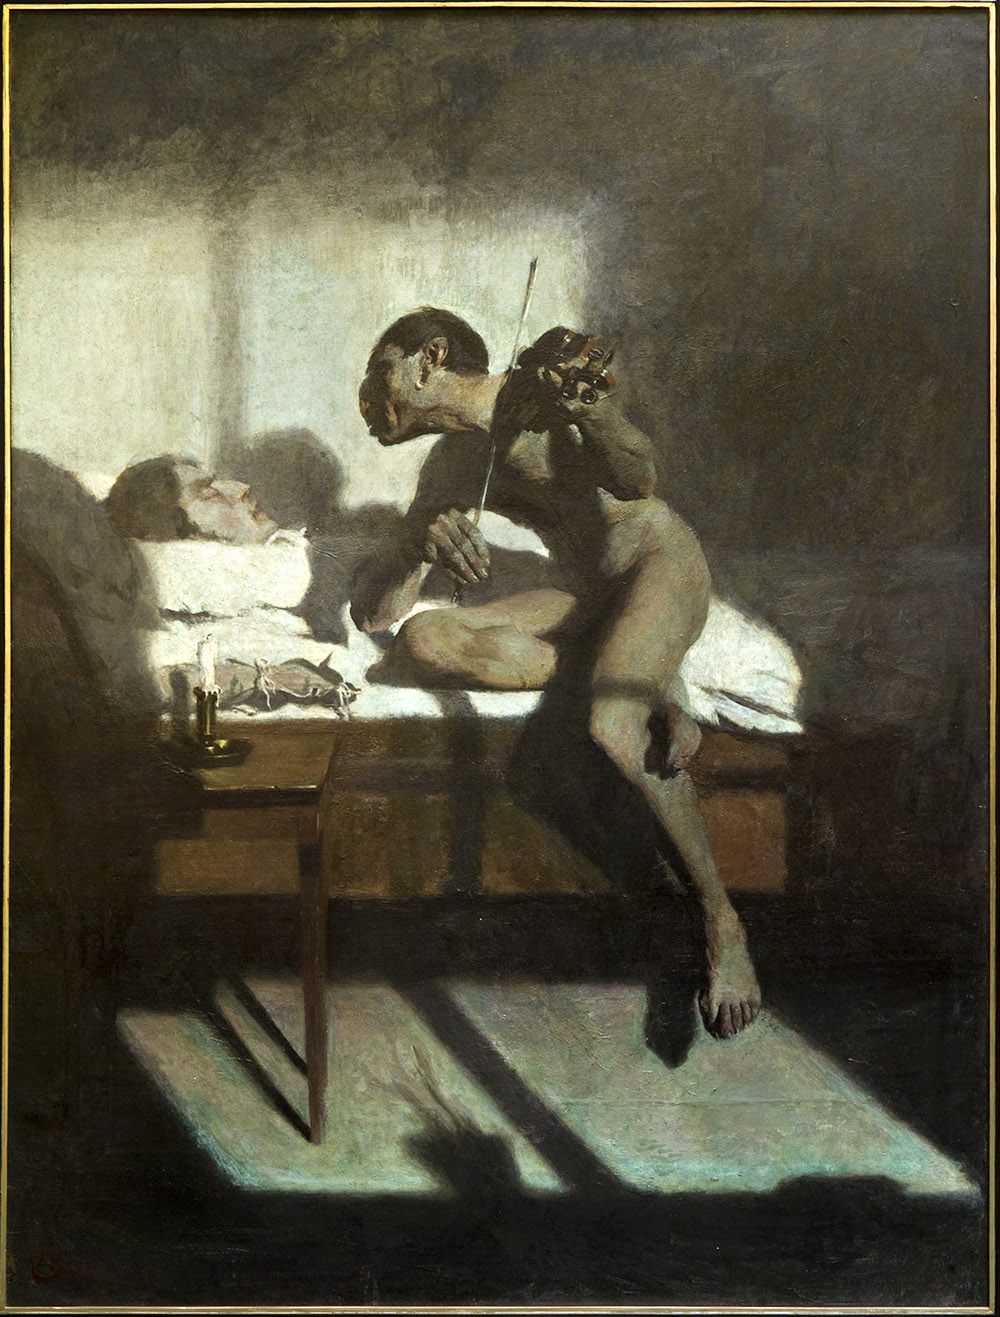 Эдвард Окунь «Смерть Паганини», 1898, холст, масло, 184 х 138 см, Музей Люблинского воеводства, Люблин